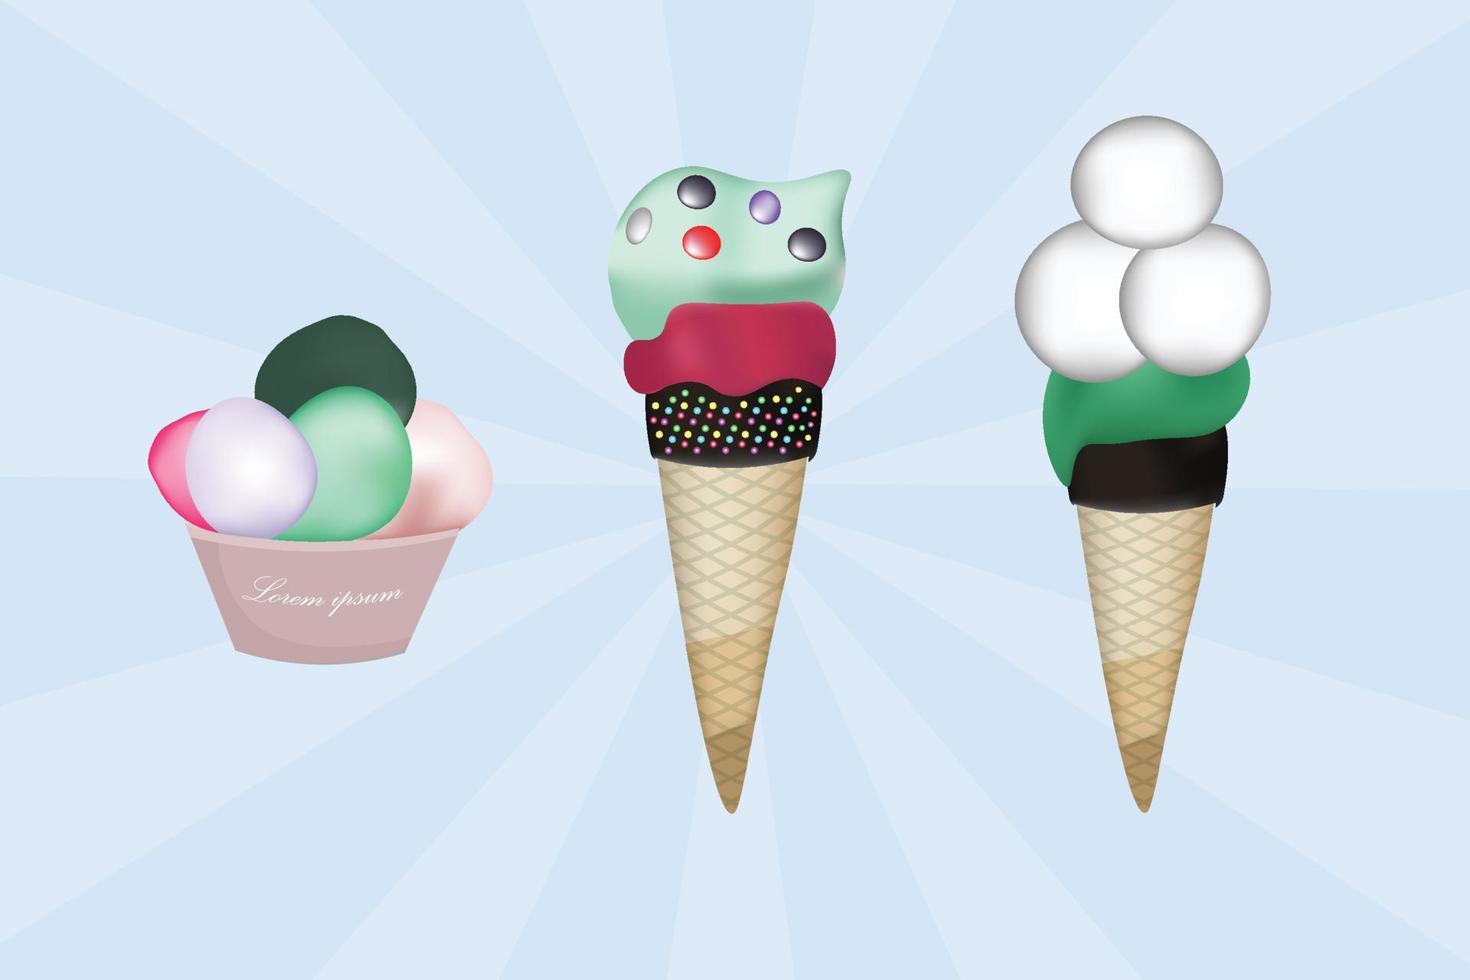 gelato, raccolta di 3 illustrazioni di gelato vettoriali isolate a colori di sfondo